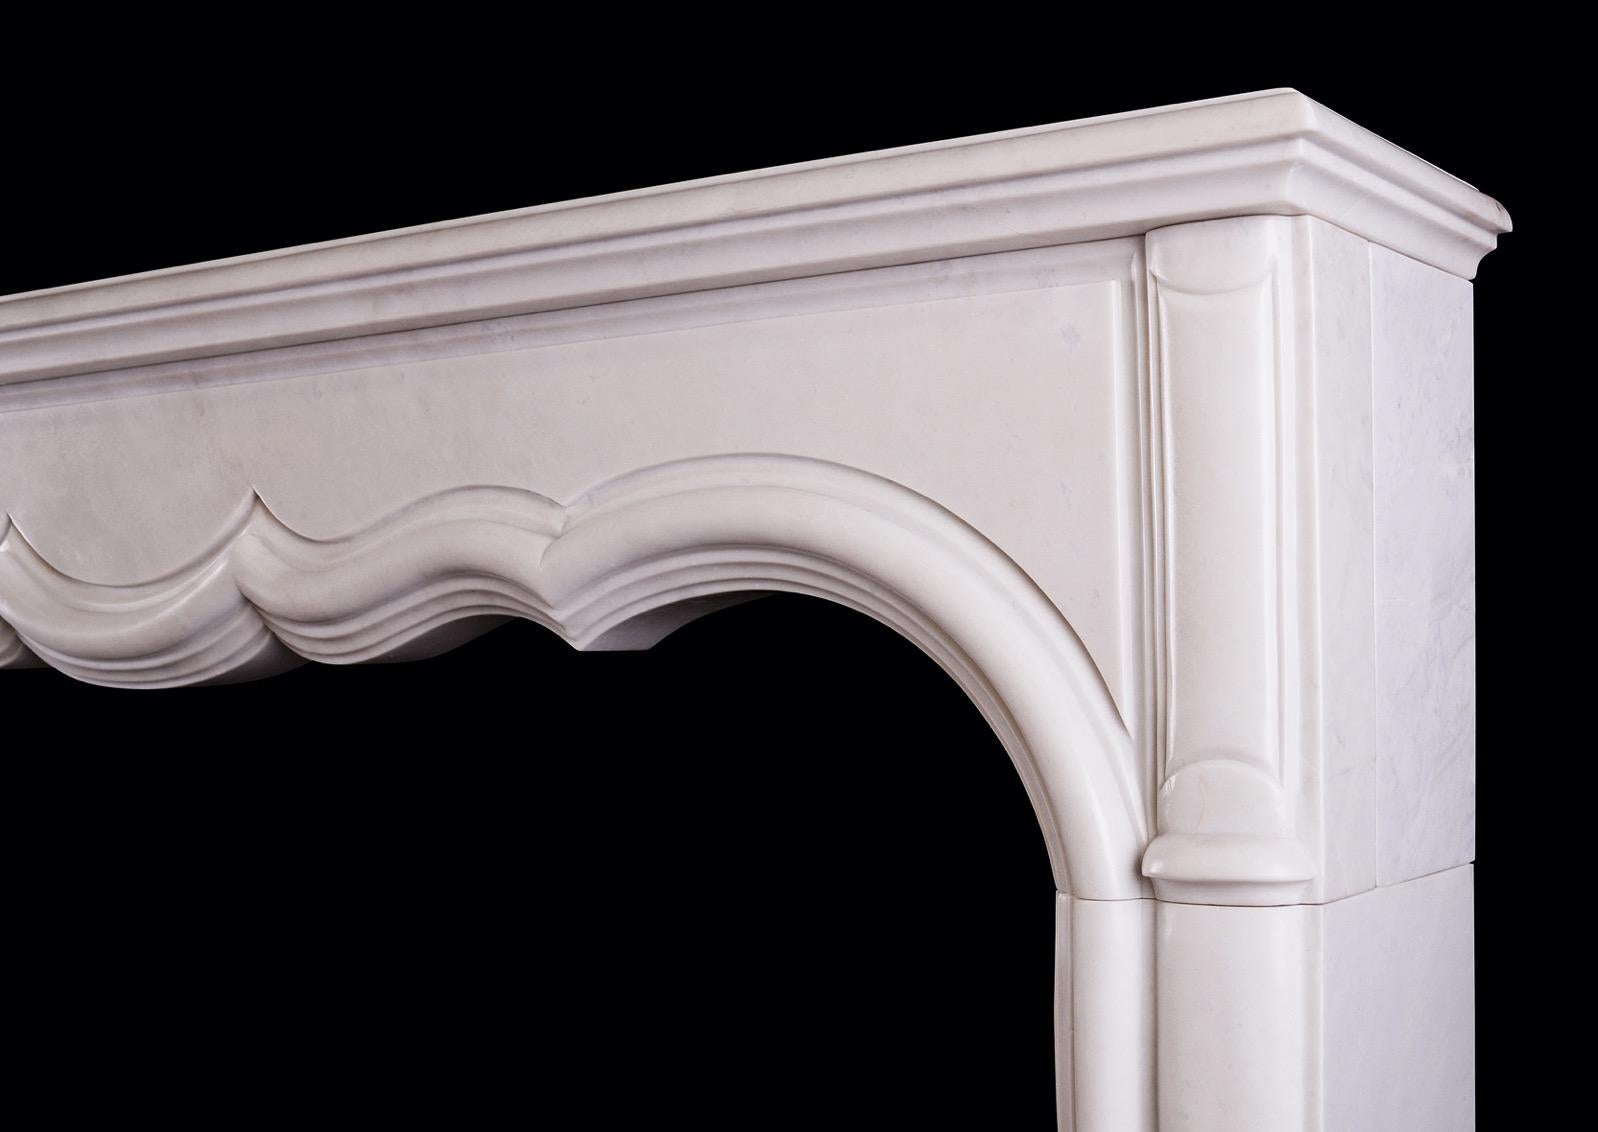 Une cheminée en marbre blanc dans le style transitionnel français LXIV / LXV. La frise en forme de panneau est ornée d'une lourde moulure intérieure et d'élégants montants en forme. Étagère moulée au-dessus. Milieu et fin du XXe siècle.

Mesures :